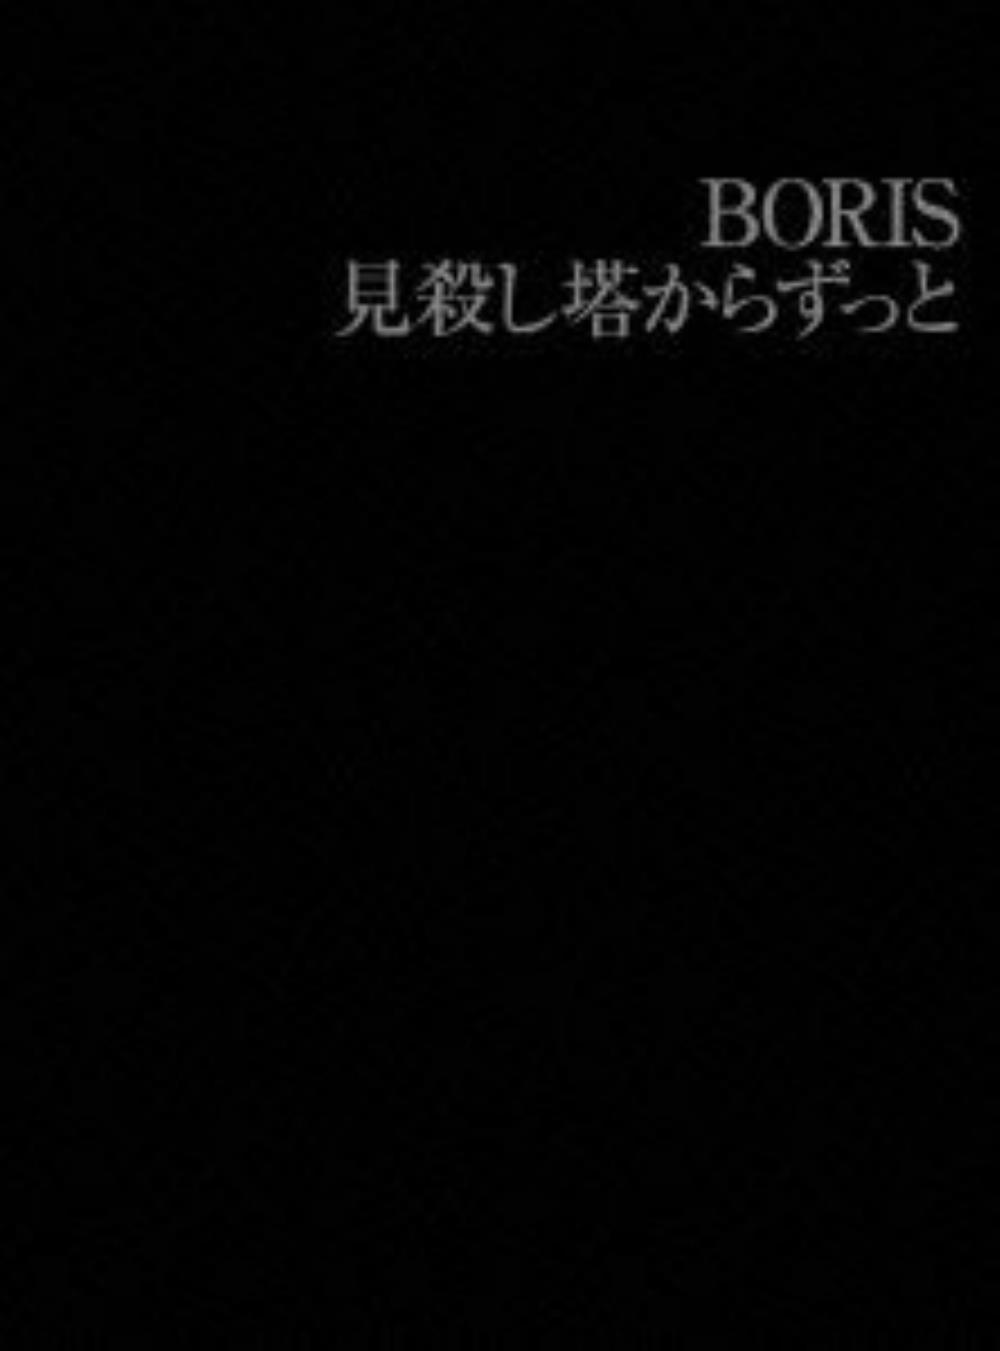 Boris 見殺し塔からずっと album cover